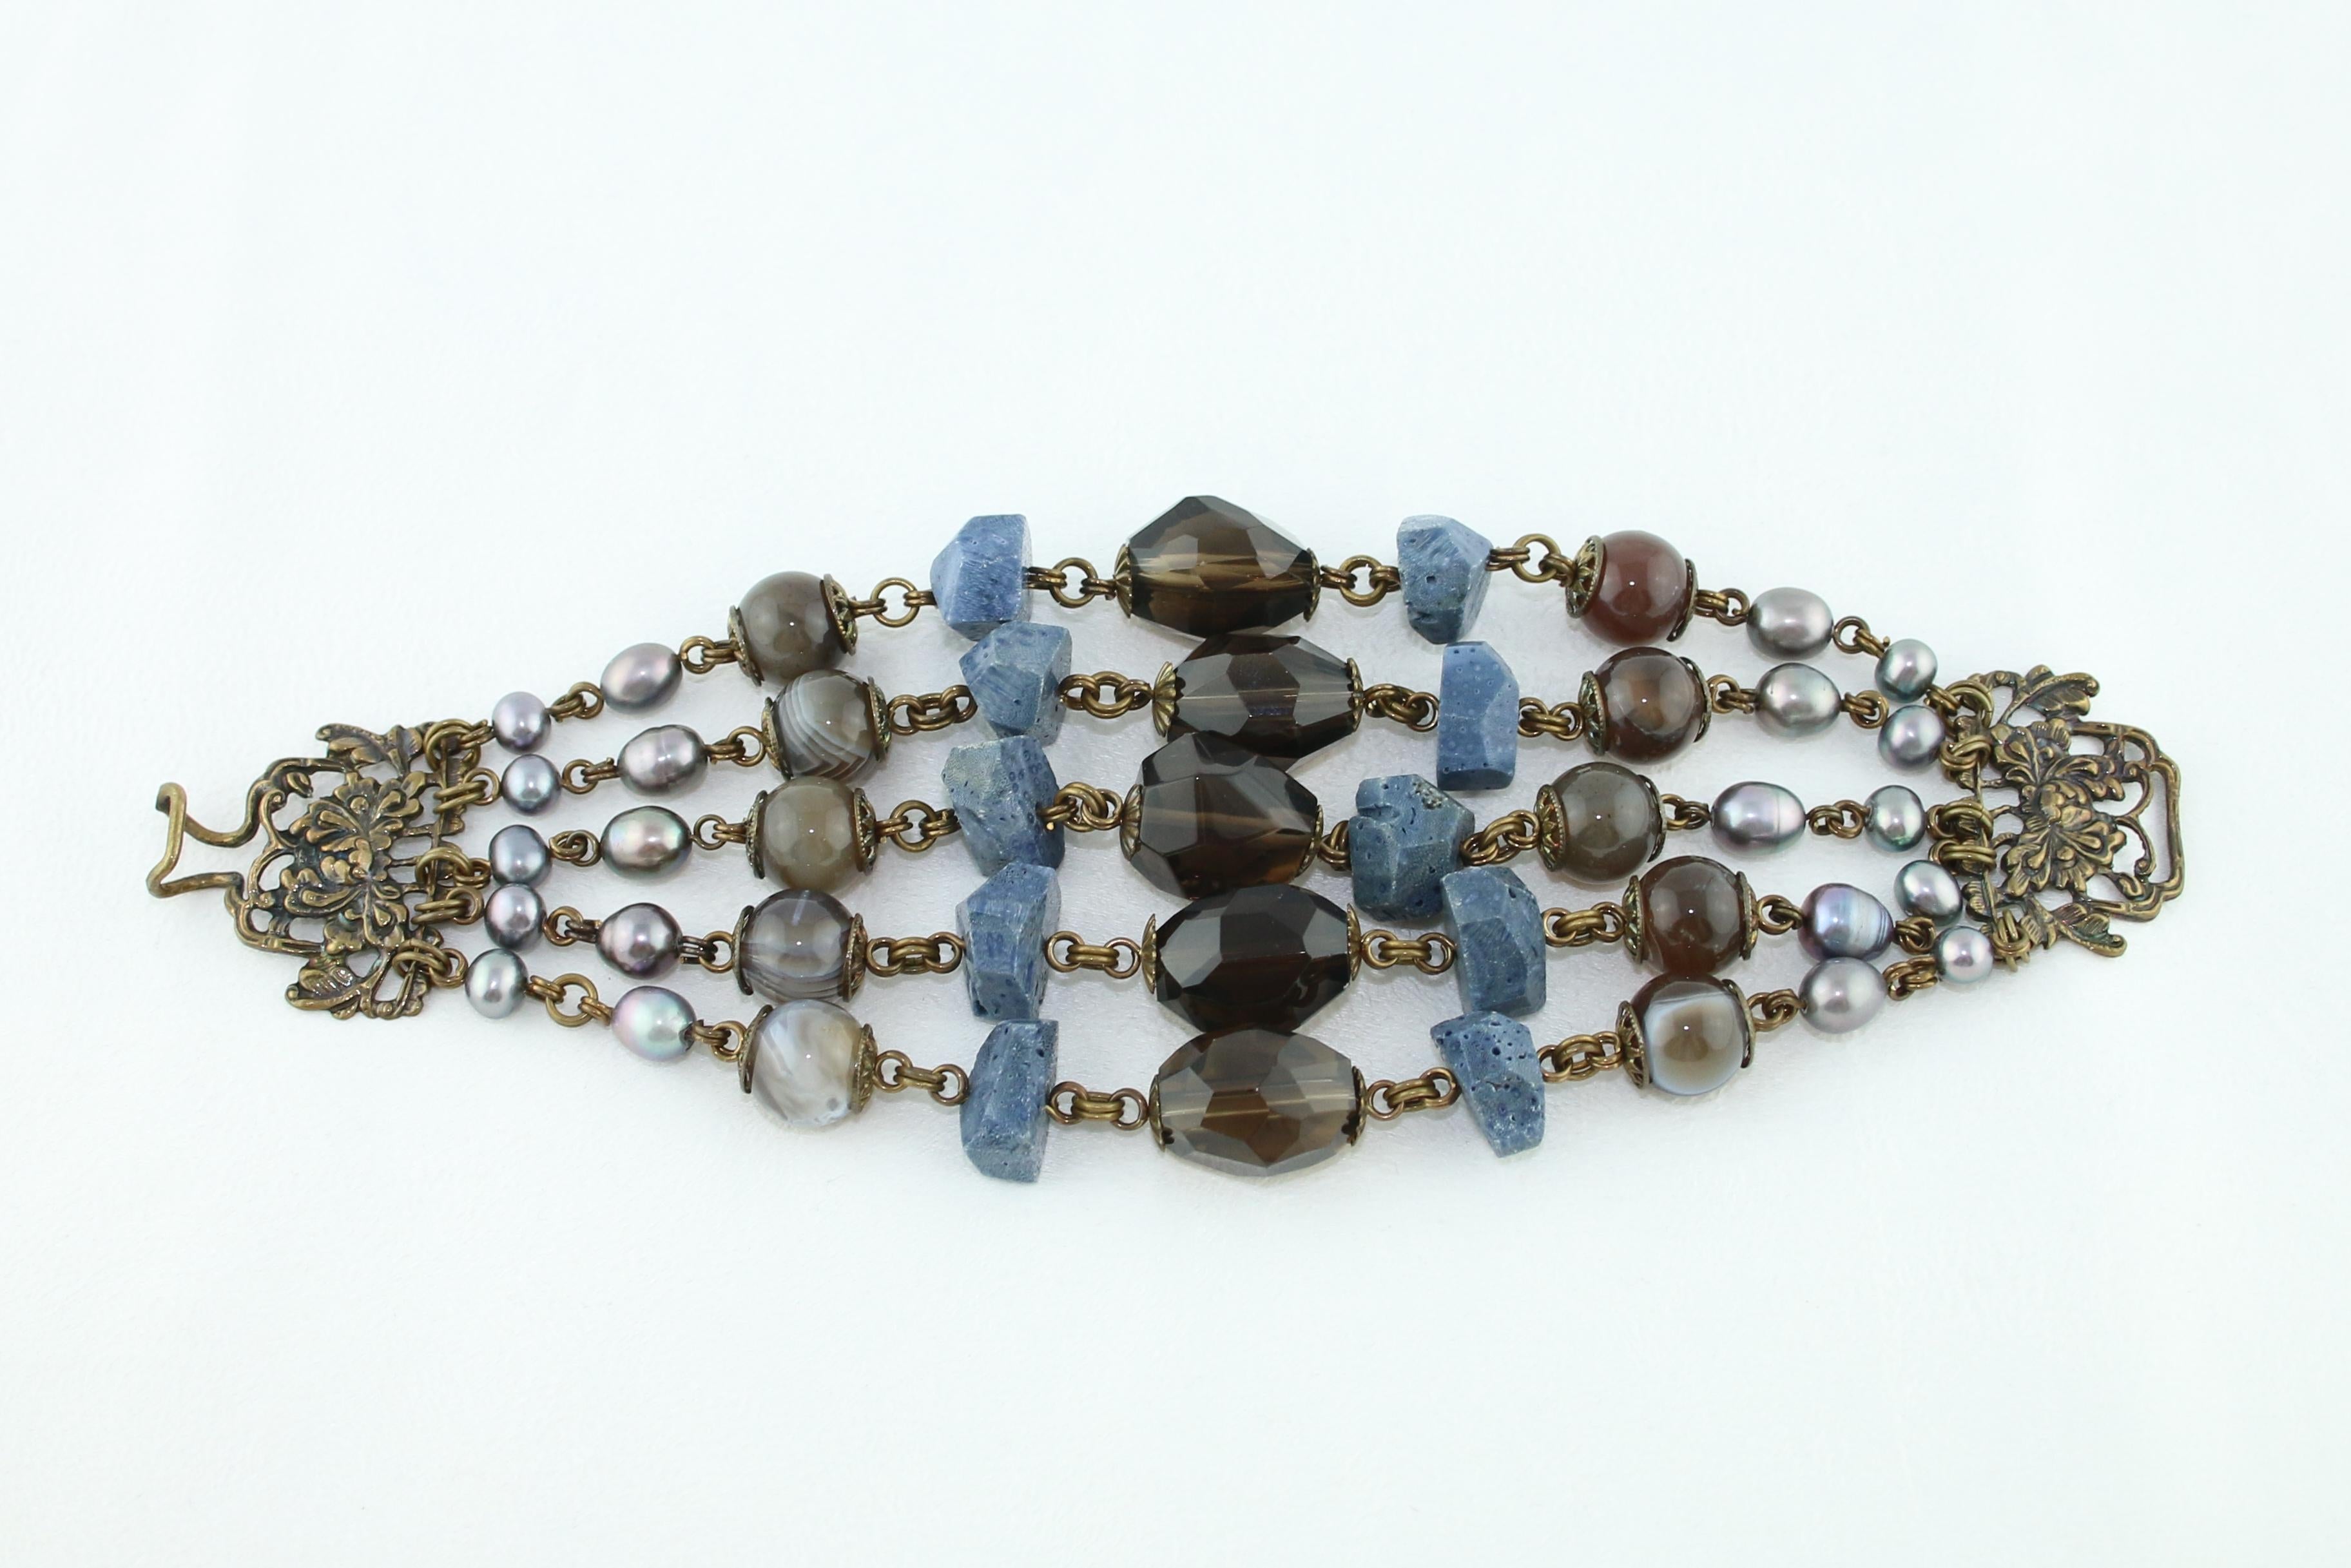 Stephen Dweck - Bracelet en laiton multi-gemmes
Le bracelet est en laiton
Composé de perles, de quartz fumé, d'agate et de corail bleu.
Le bracelet mesure 8